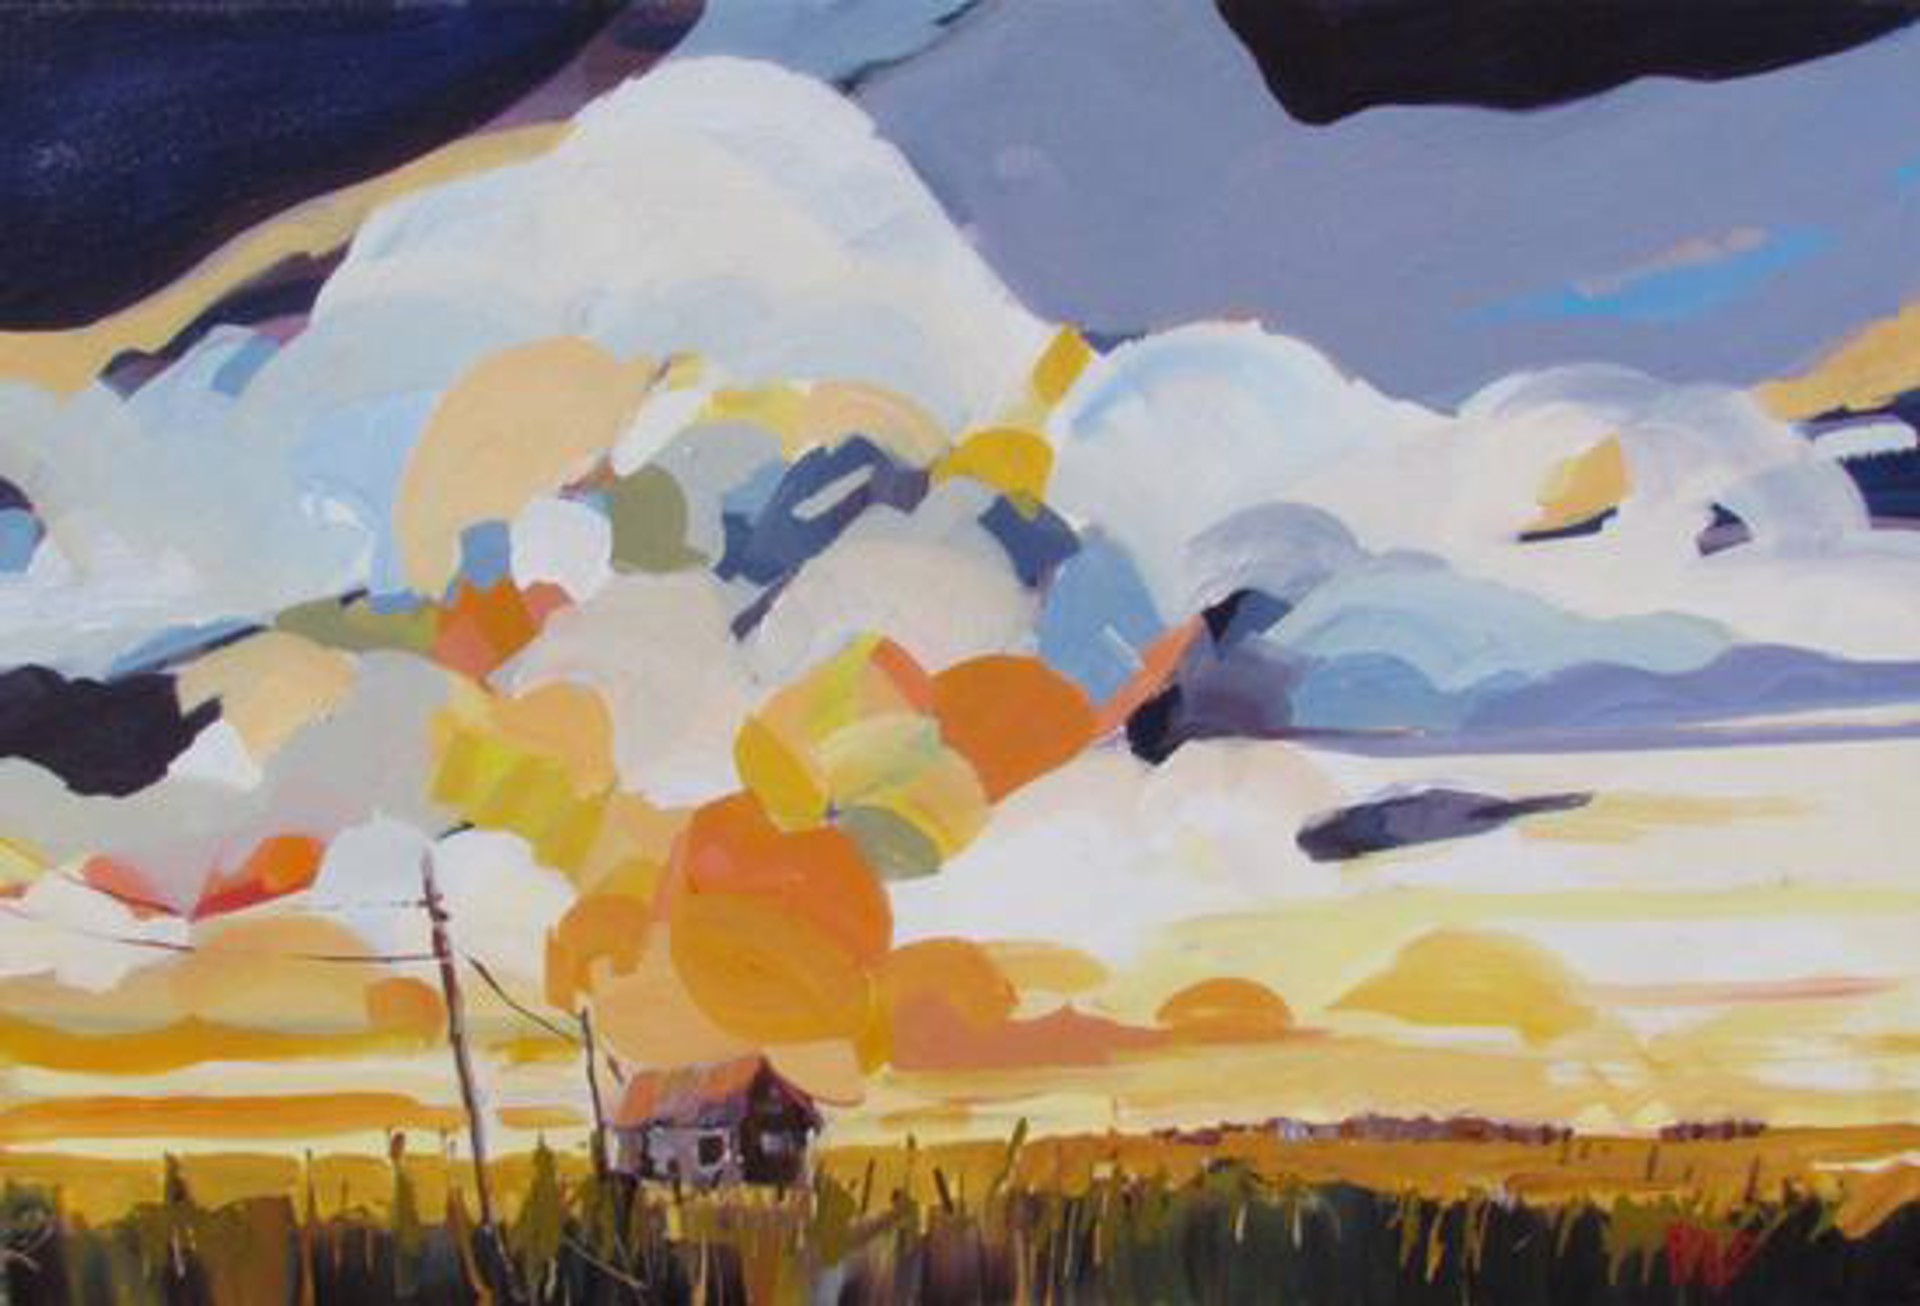 Prairie Sky by Rick Bond